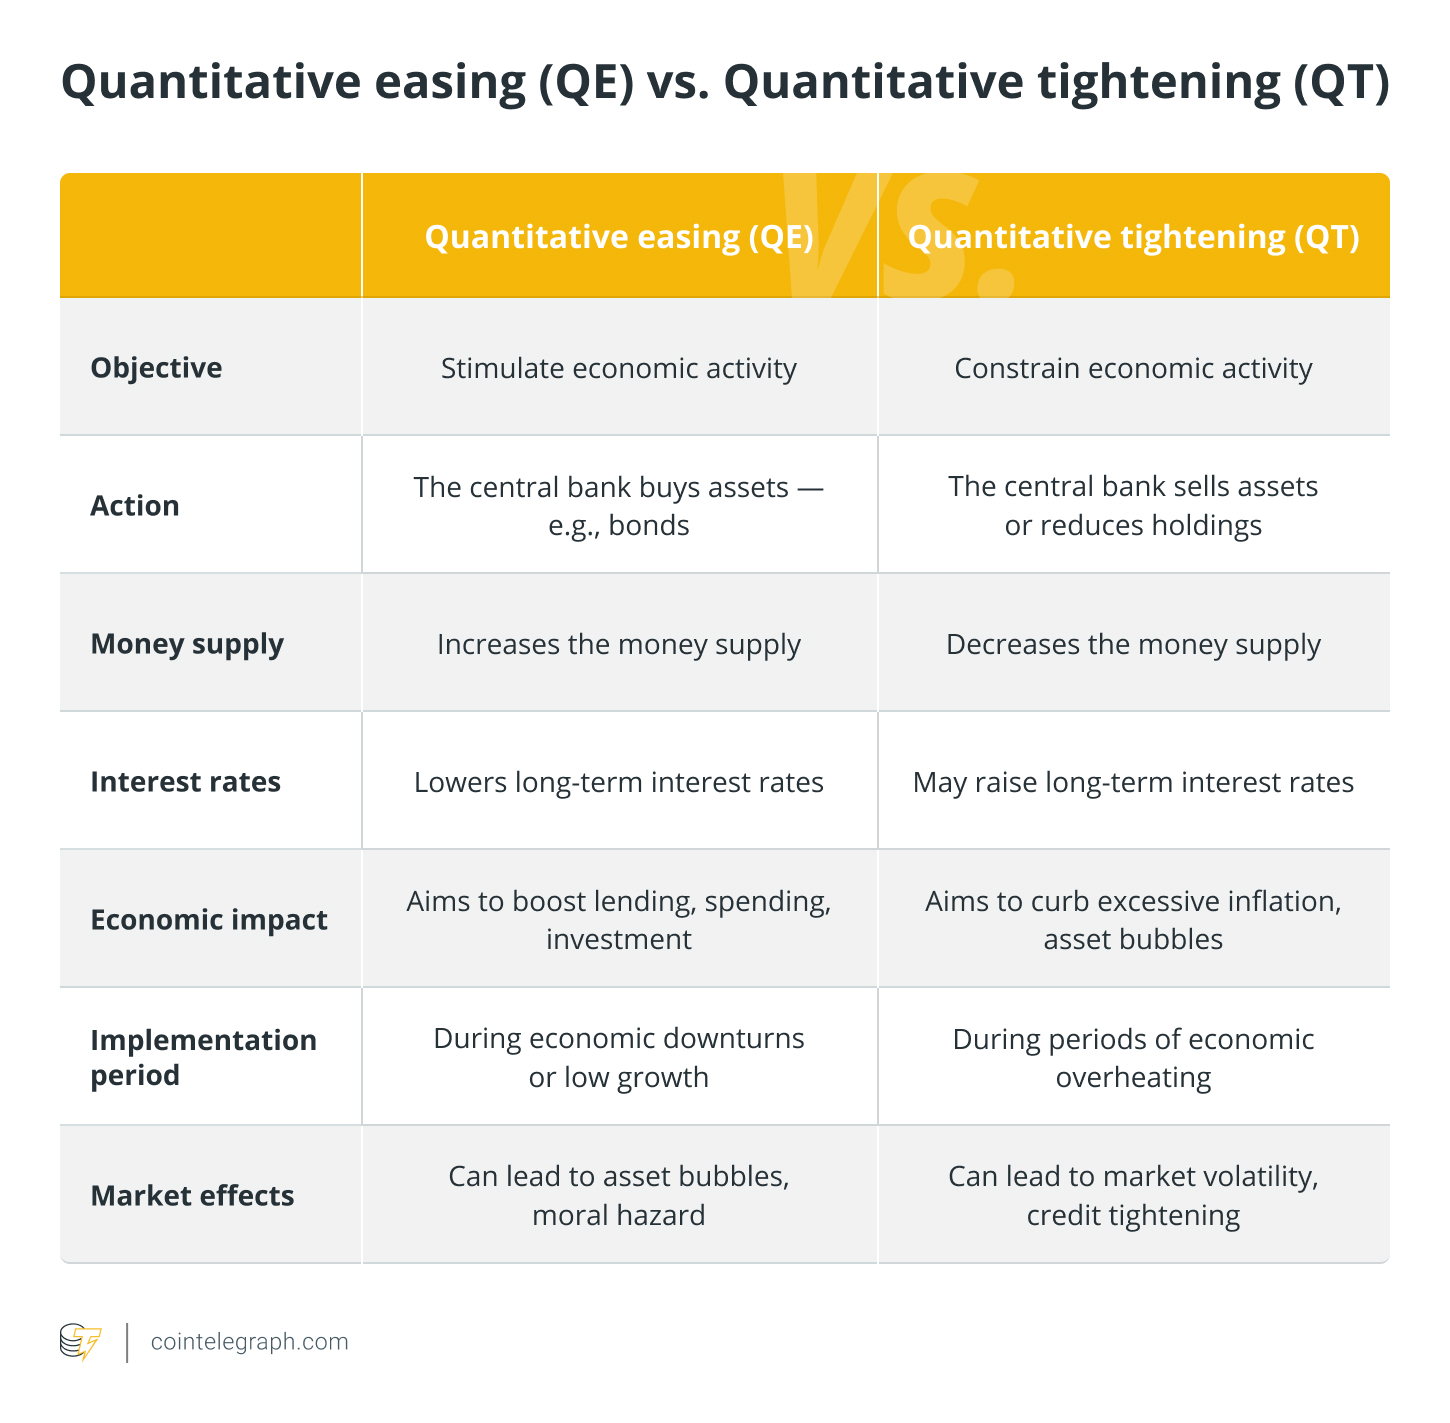 Quantitative easing (QE) vs. Quantitative tightening (QT)